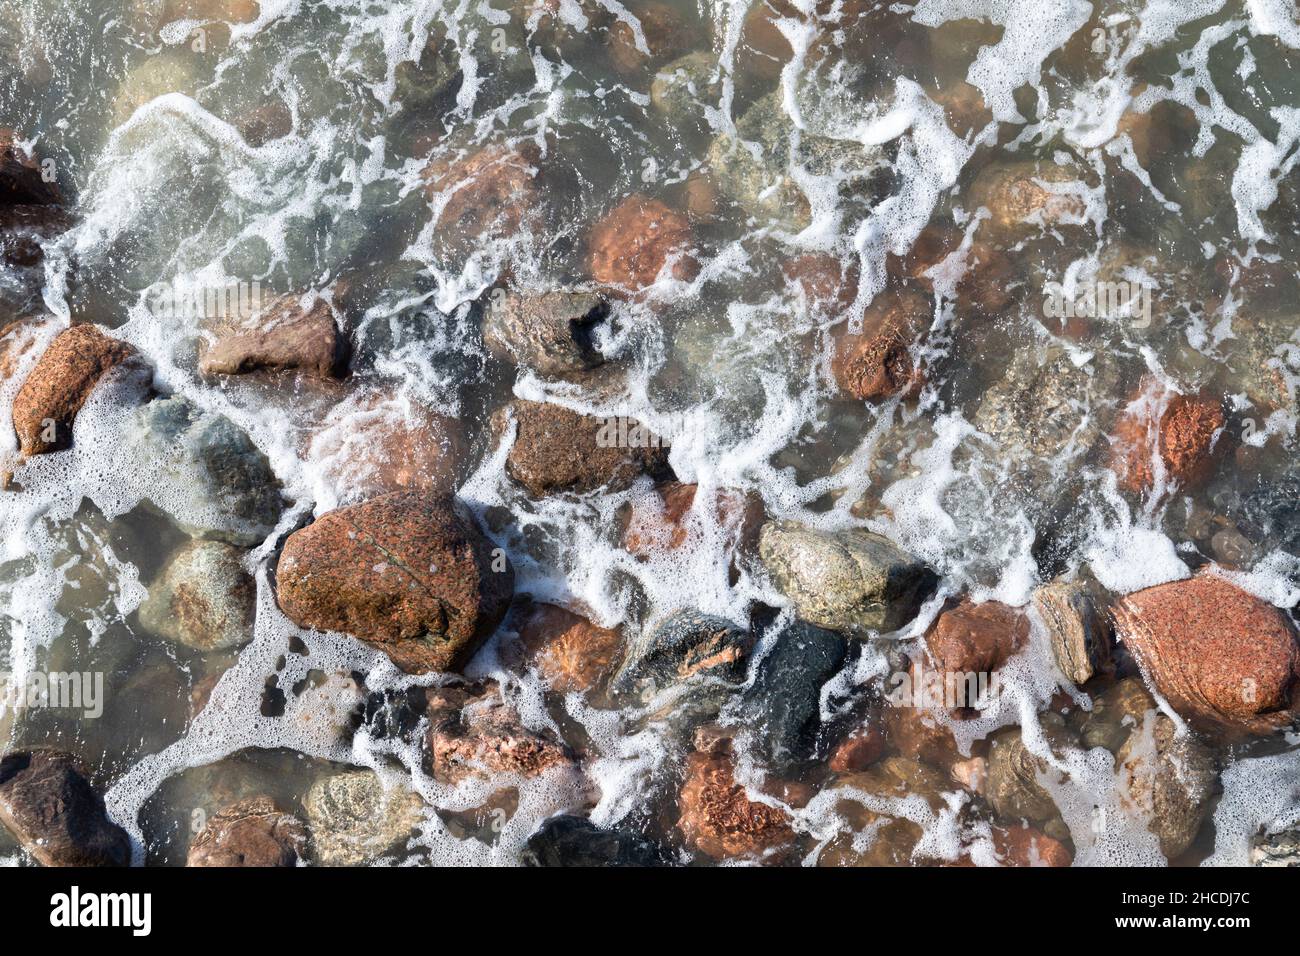 Acqua marina con pietre bagnate e schiuma. Foto di sfondo naturale, vista dall'alto Foto Stock